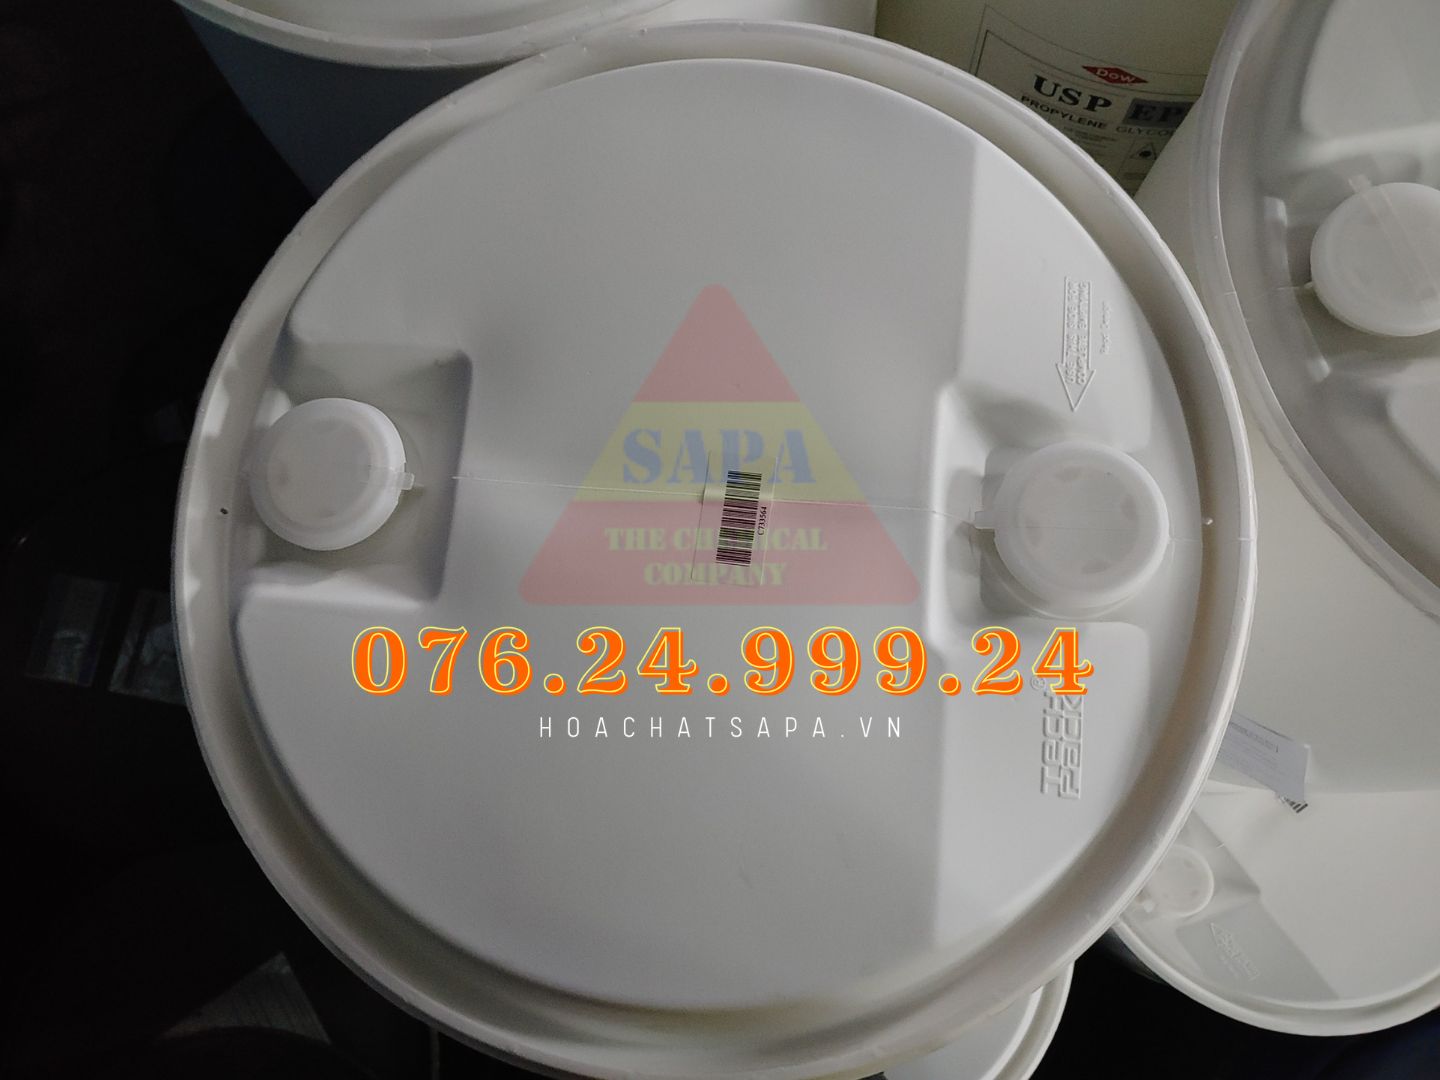 PG Dược ( Phuy Nhựa) - Propylene Glycol USP - Thái Lan - 01